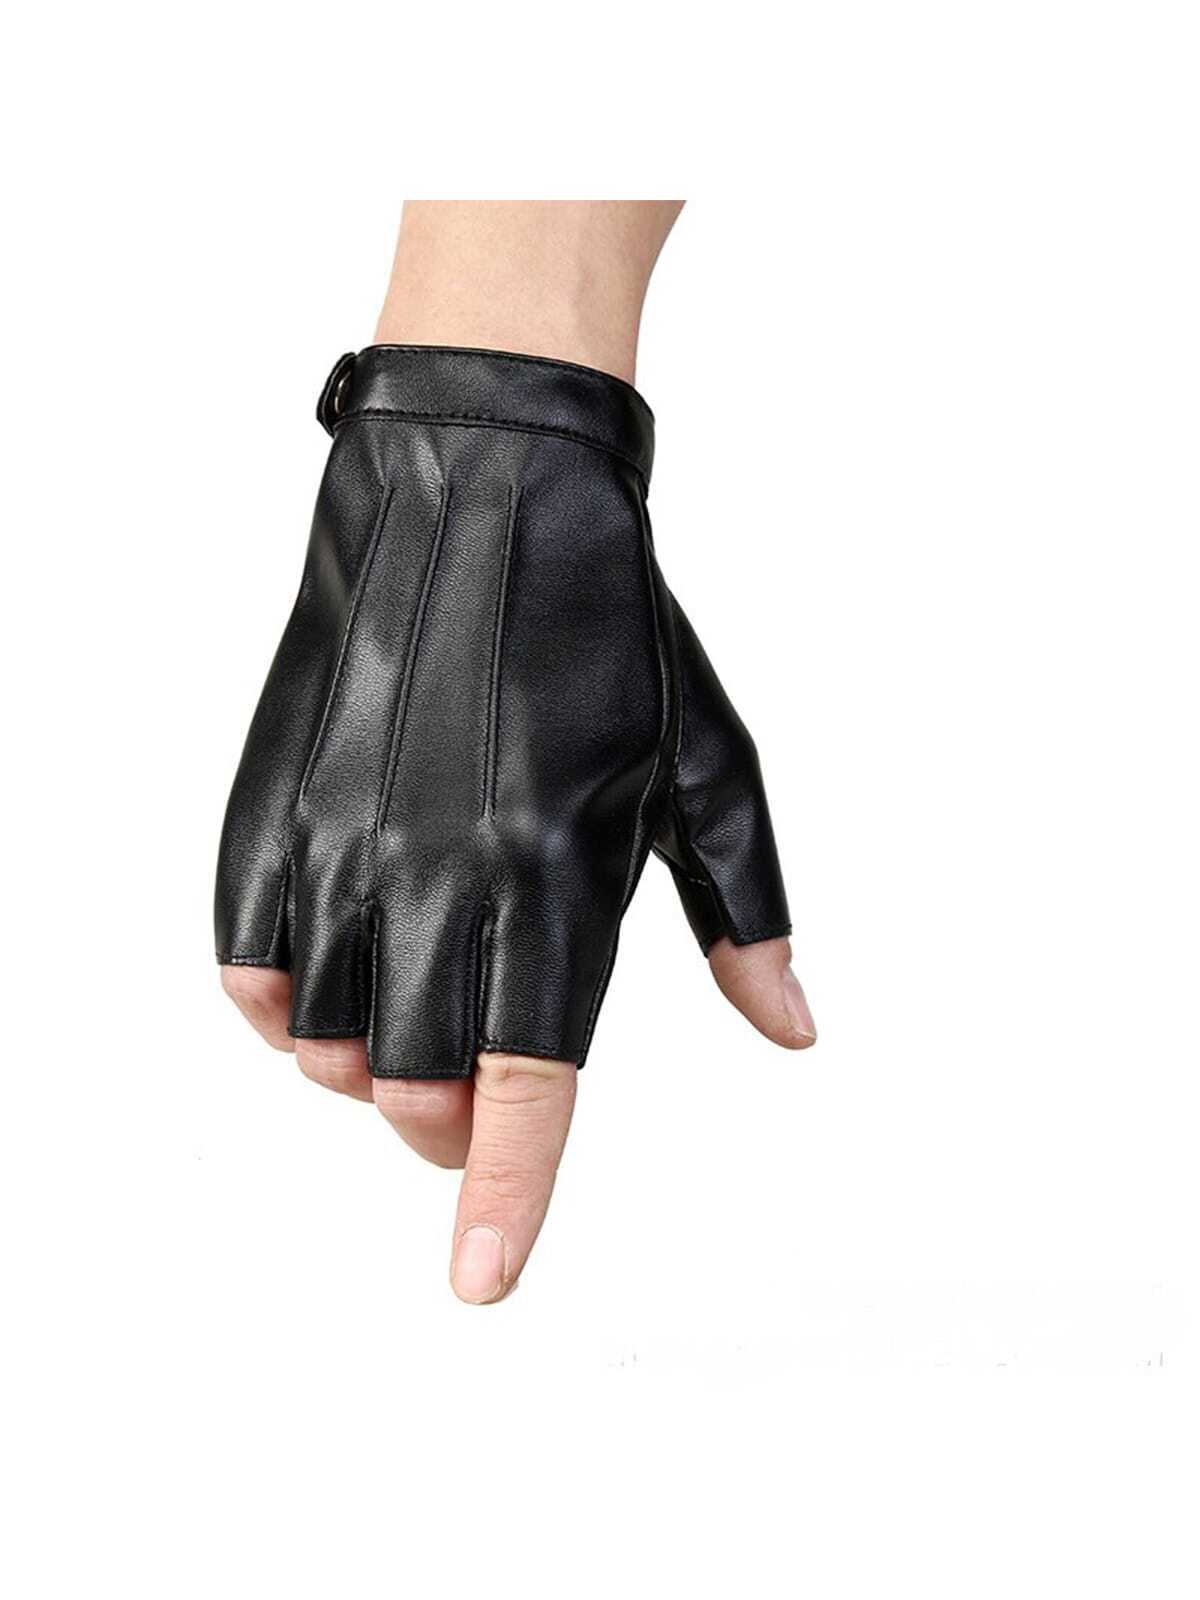 Ανδρικά μαύρα δερμάτινα γάντια οδήγησης-αθλητικά Ηalf Finger